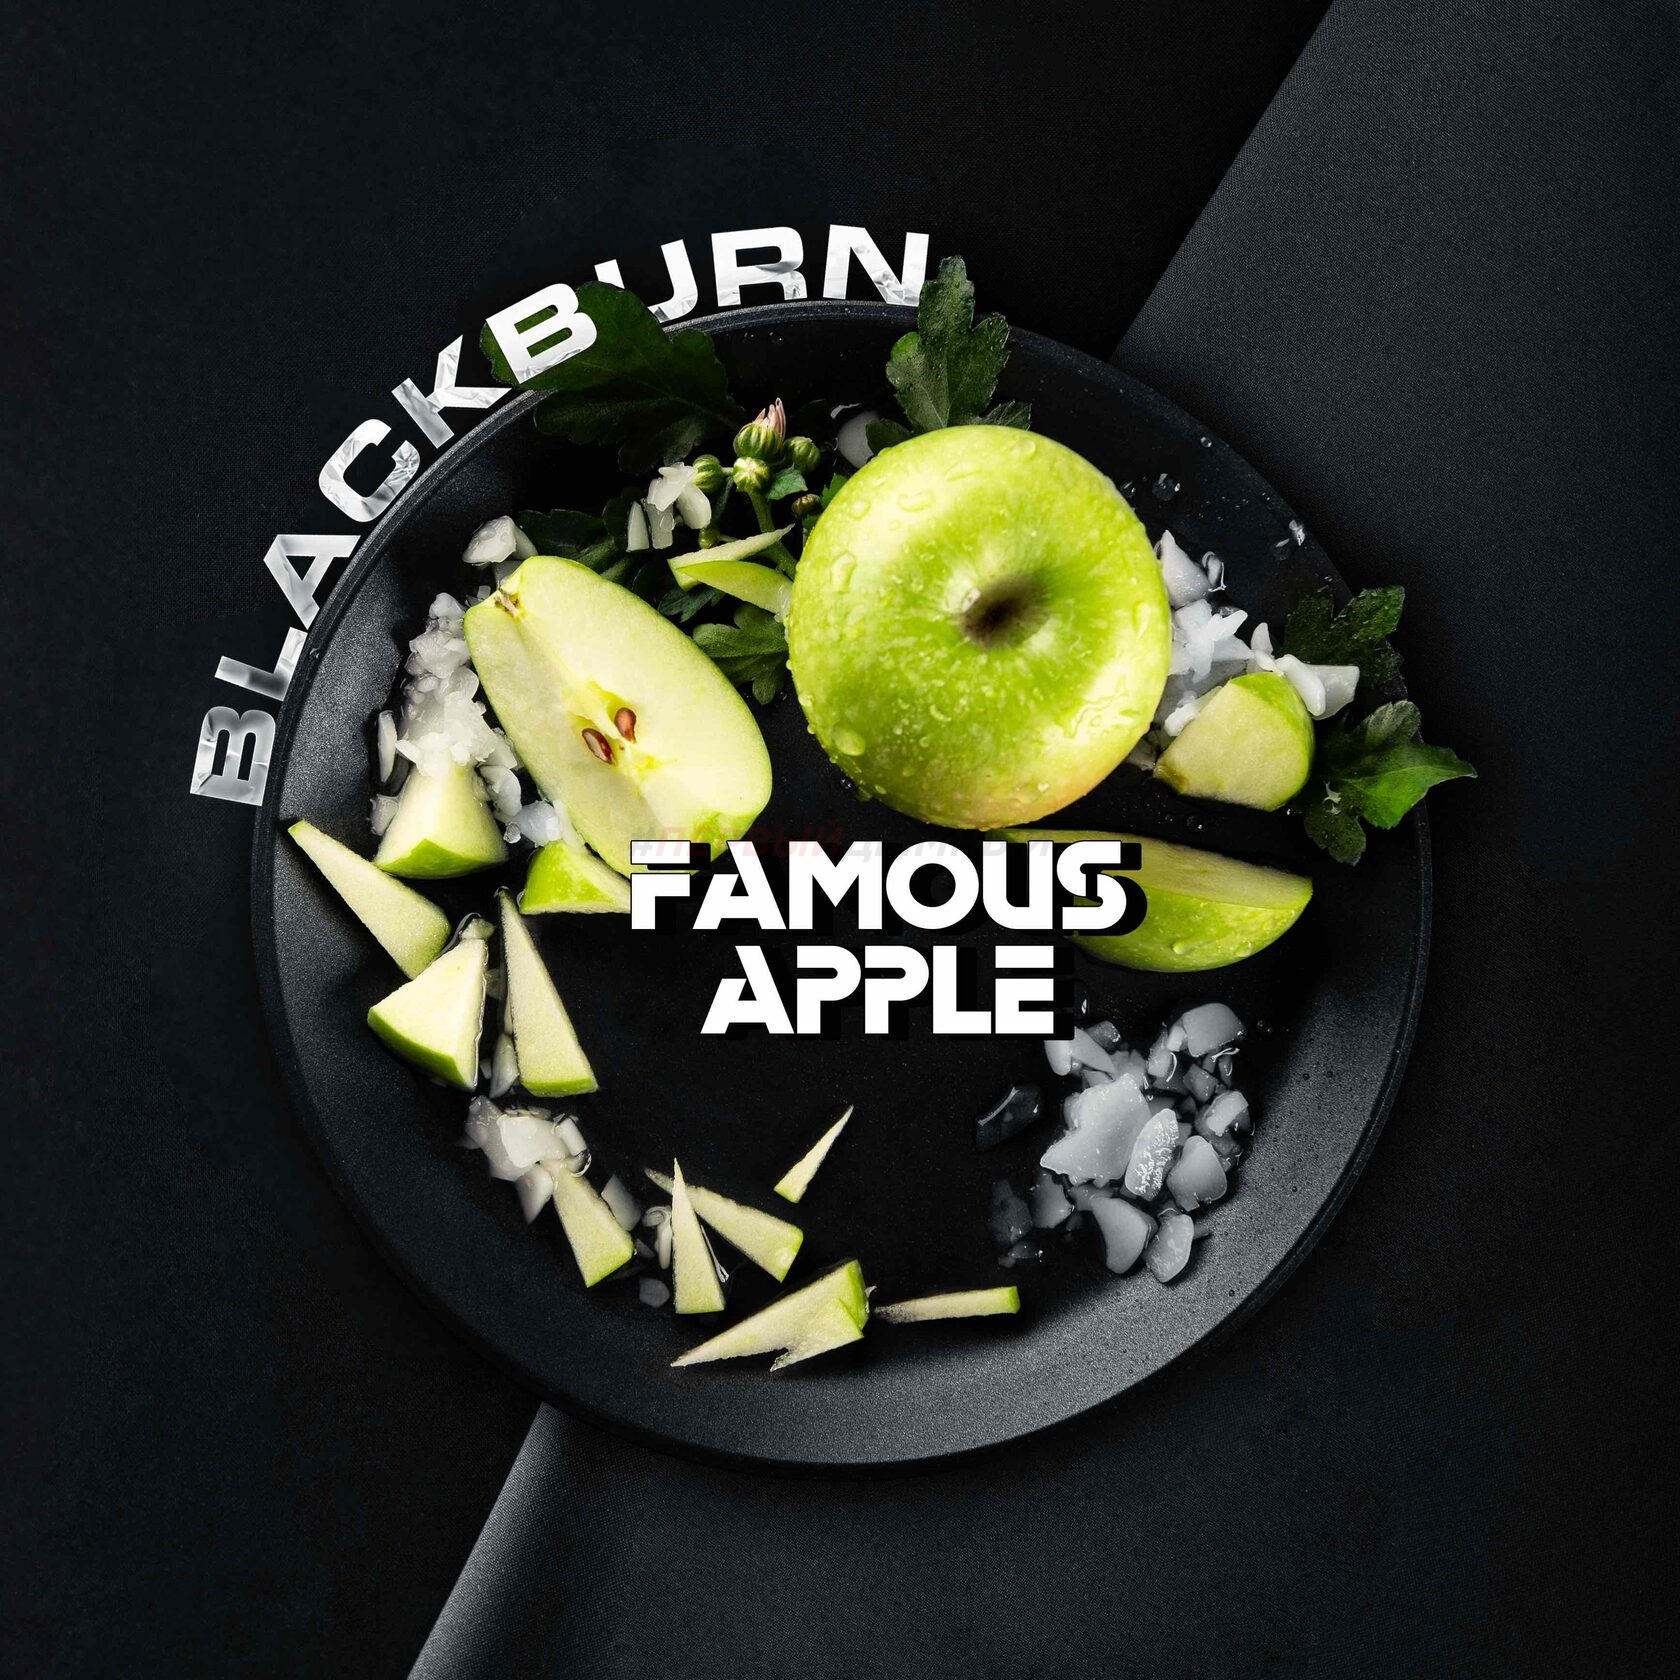 (МТ) BlackBurn 100гр Famous Apple - Прохладное яблоко